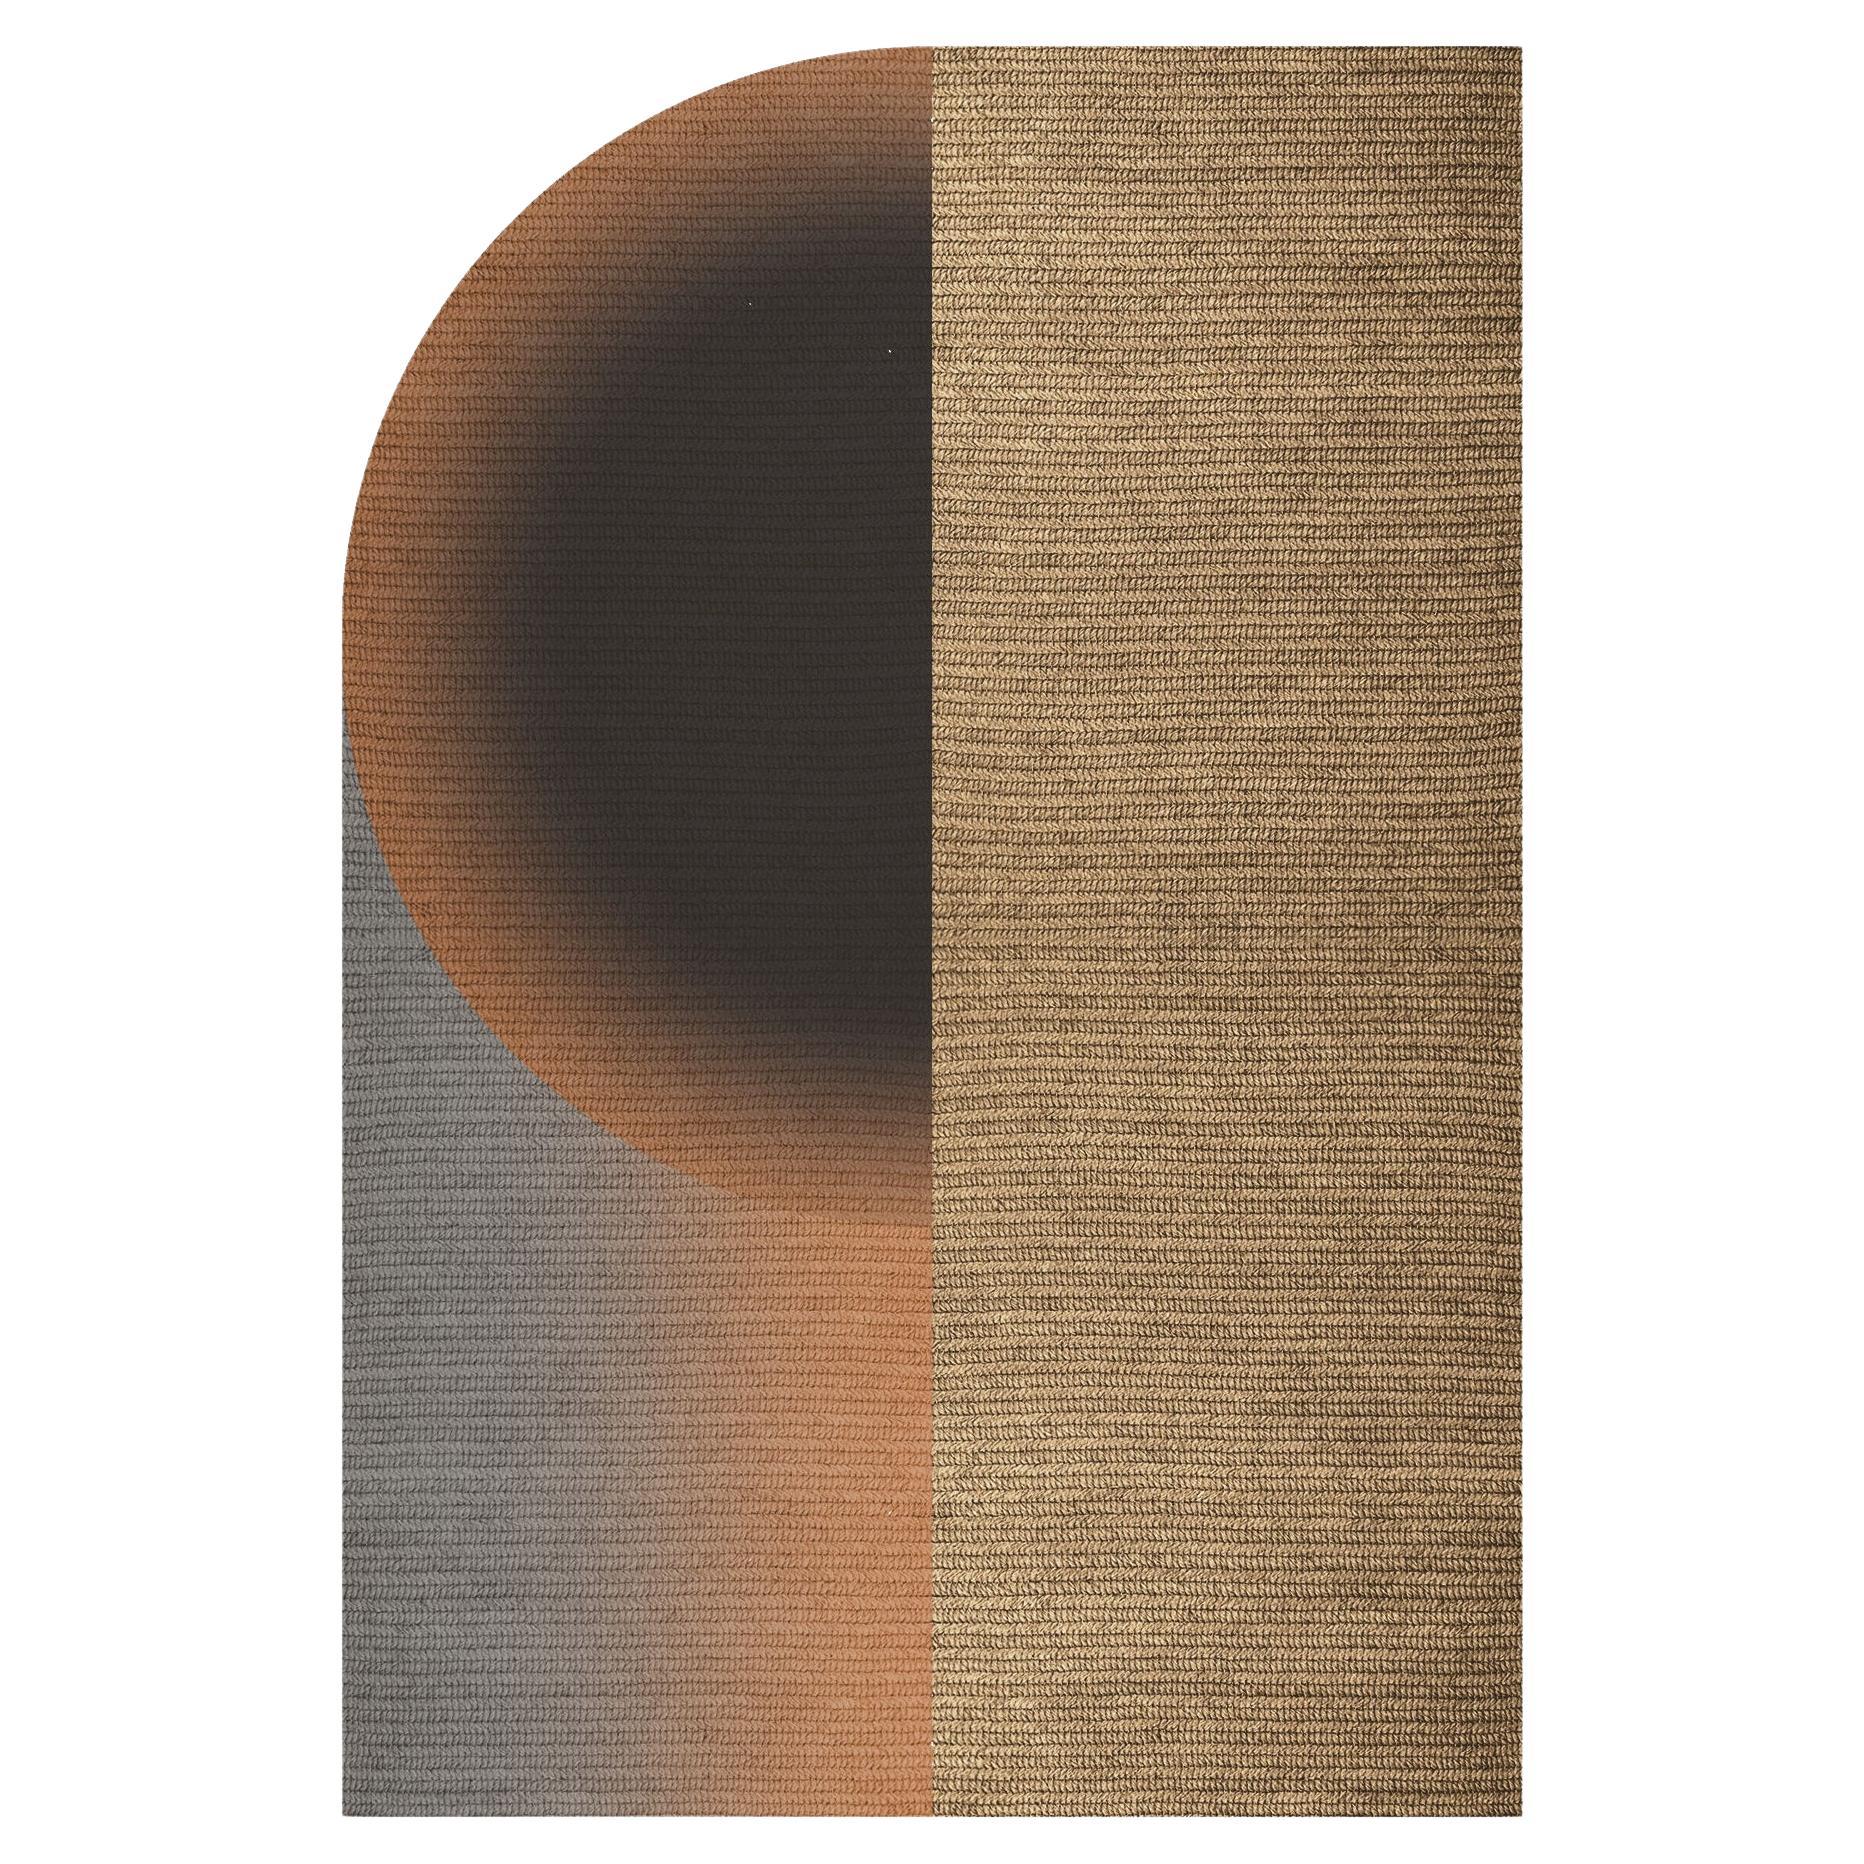 Tapis «low » en Abaca, couleur « Mahogany », 200 x 300 cm, de Claire Vos pour Musett Design